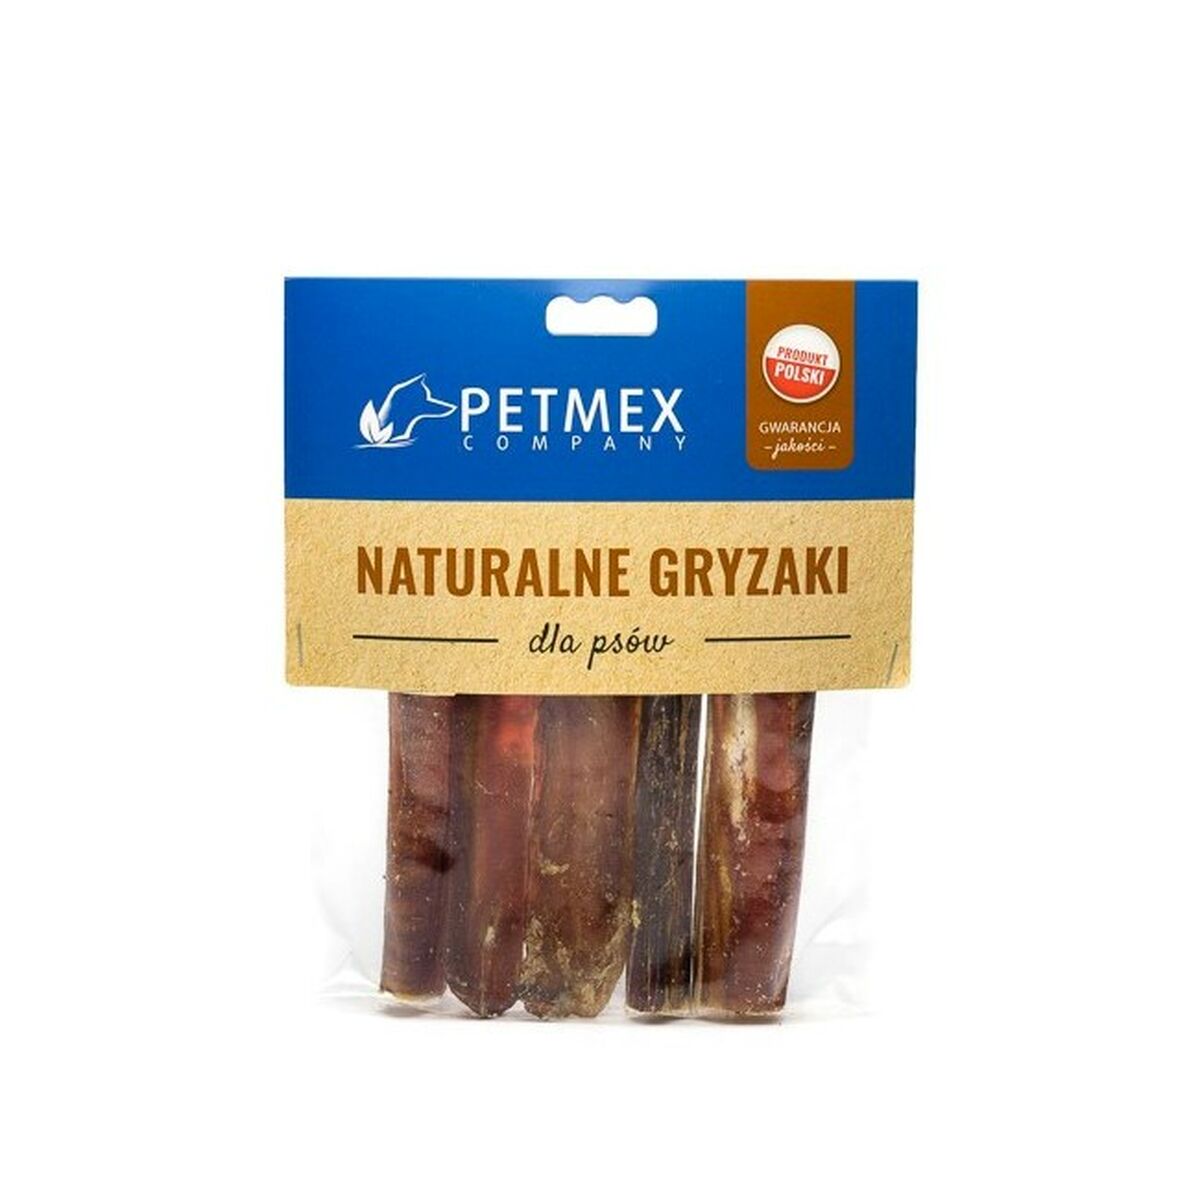 Snack voor honden Petmex                                 Kalfsvlees 30 g